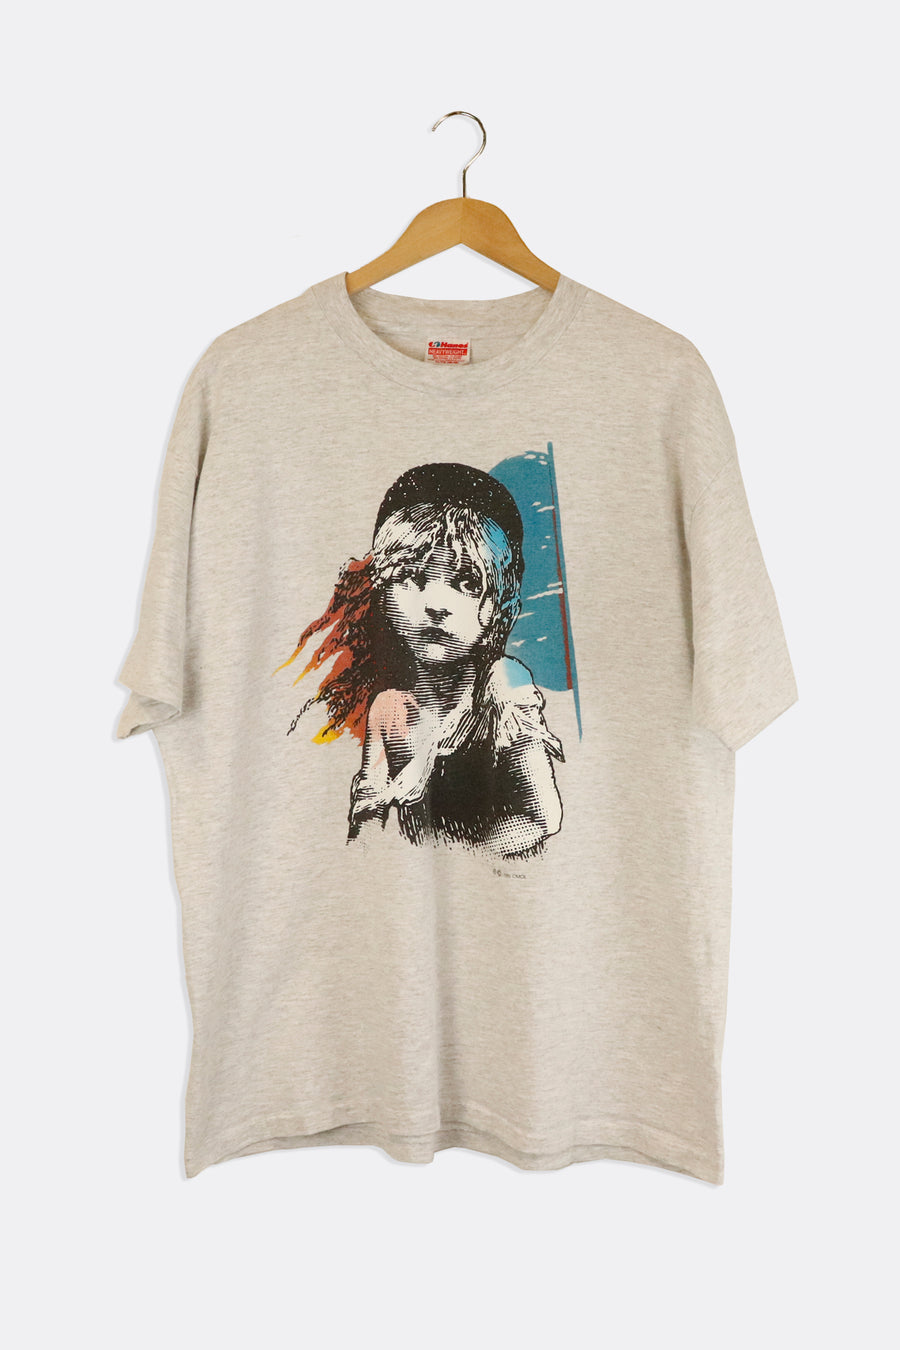 Vintage 1986 Les Miserables Girl Graphic T Shirt Sz XL